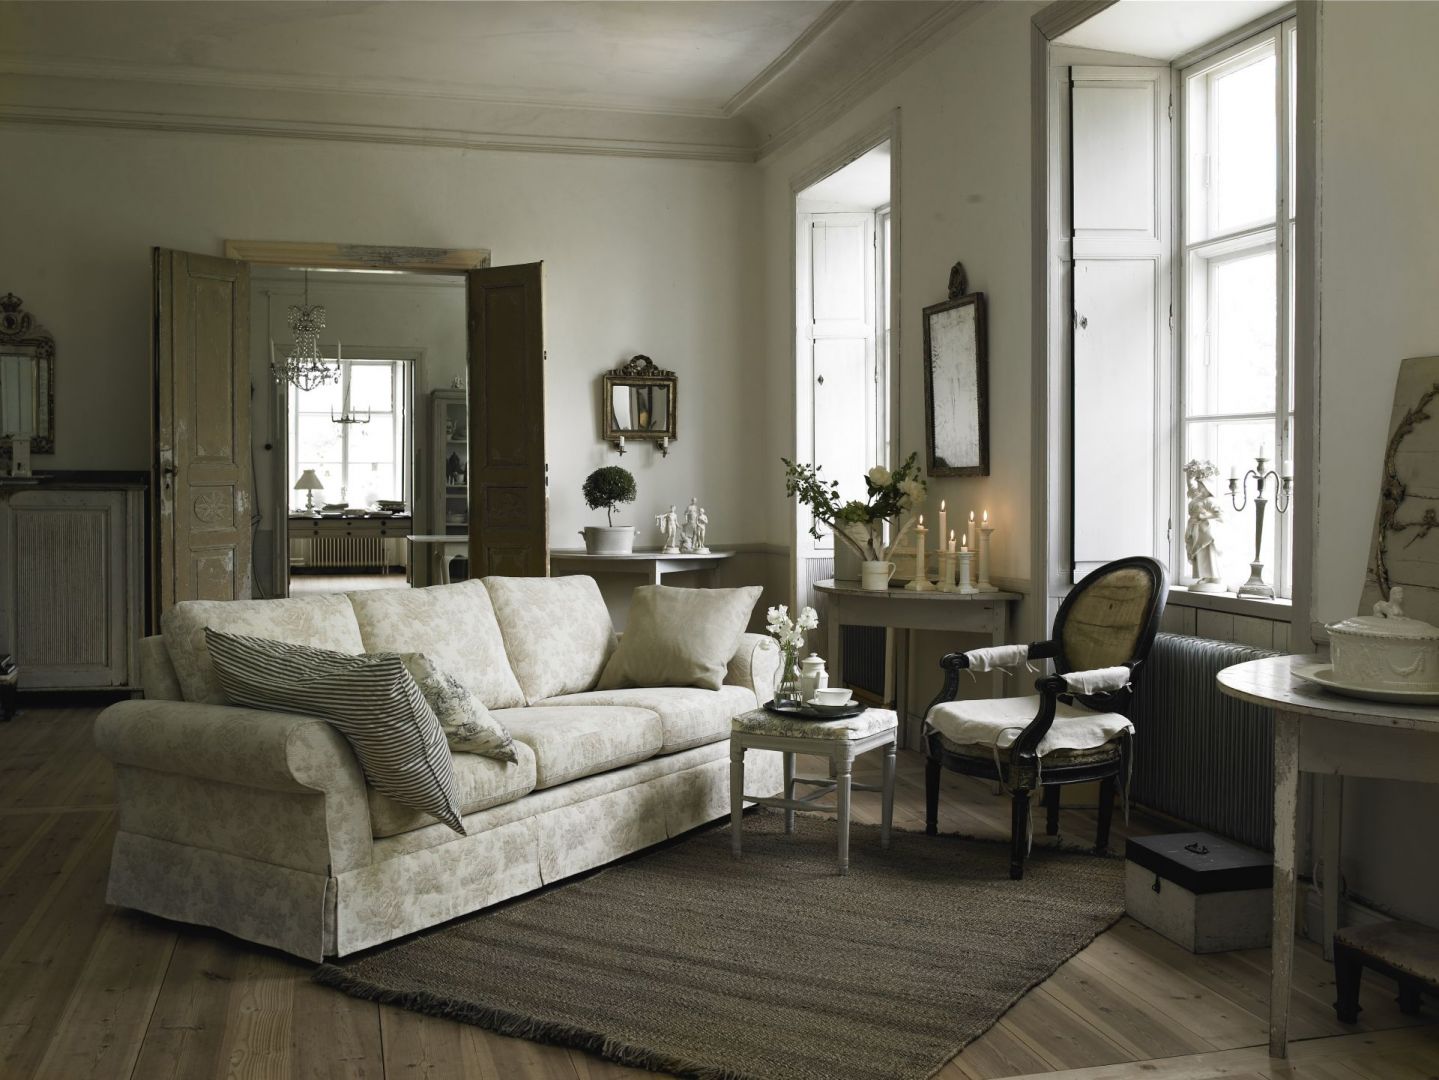 W stylowym salonie, wraz z stylizowanymi meblami świetnie komponuje się miękka sofa z poduchami. Fot. Skagen